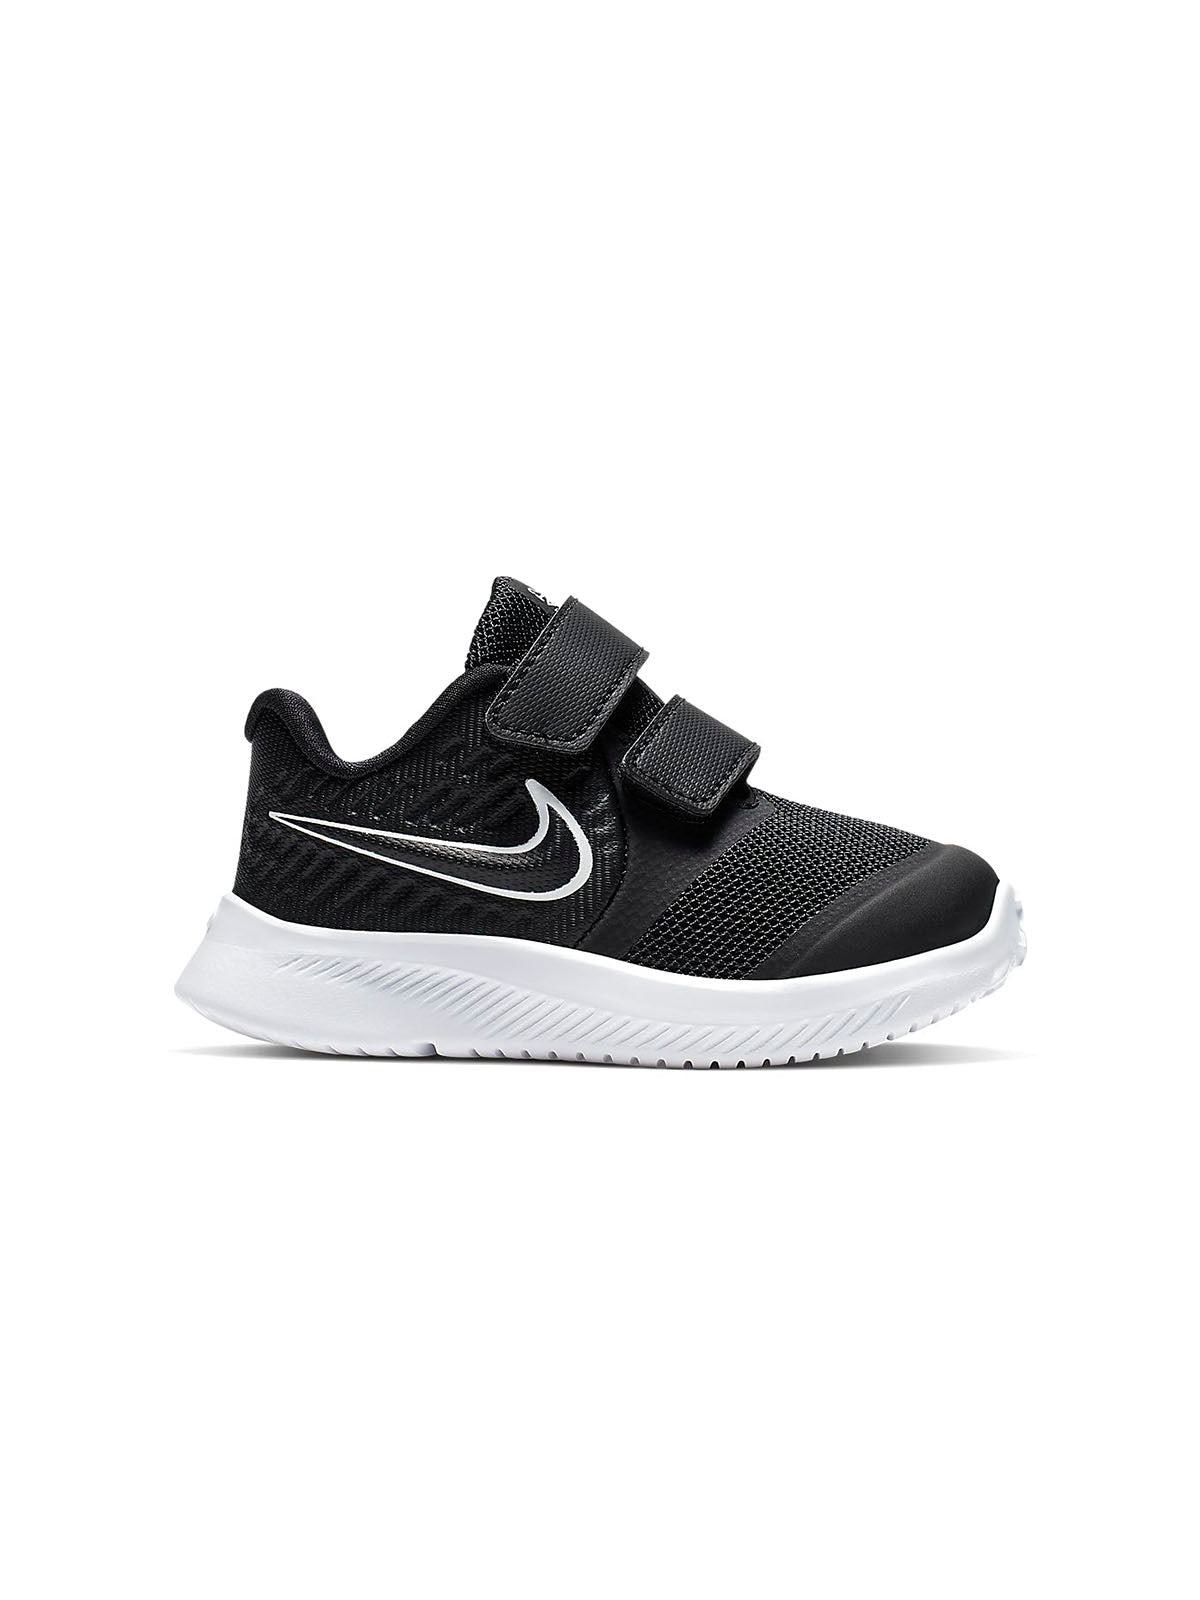 Sneaker Bambini Unisex Nike - Nike Star Runner 2 Tdv - Nero